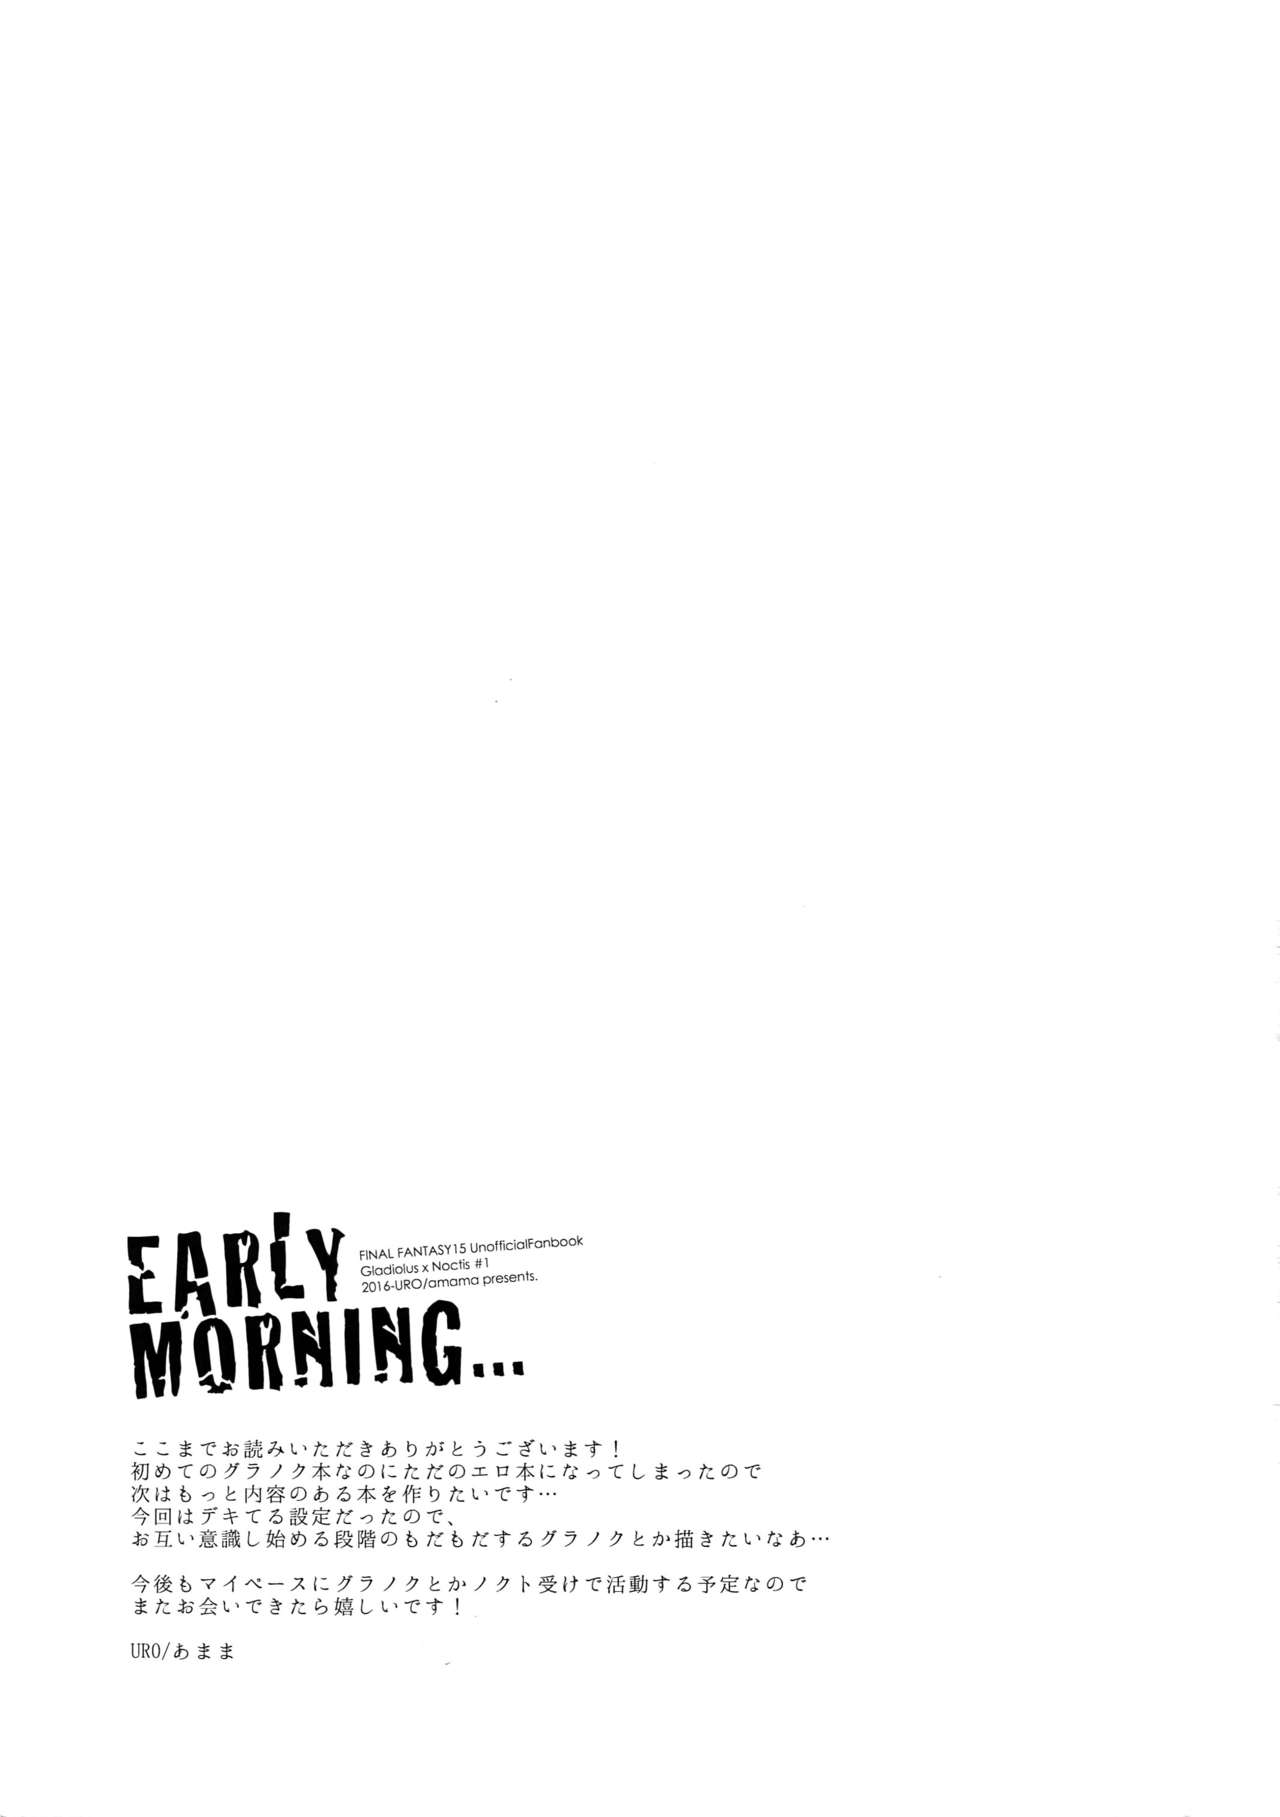 (HARUCC22) [URO (あまま)] EARLY MORNING... (ファイナルファンタジーXV)